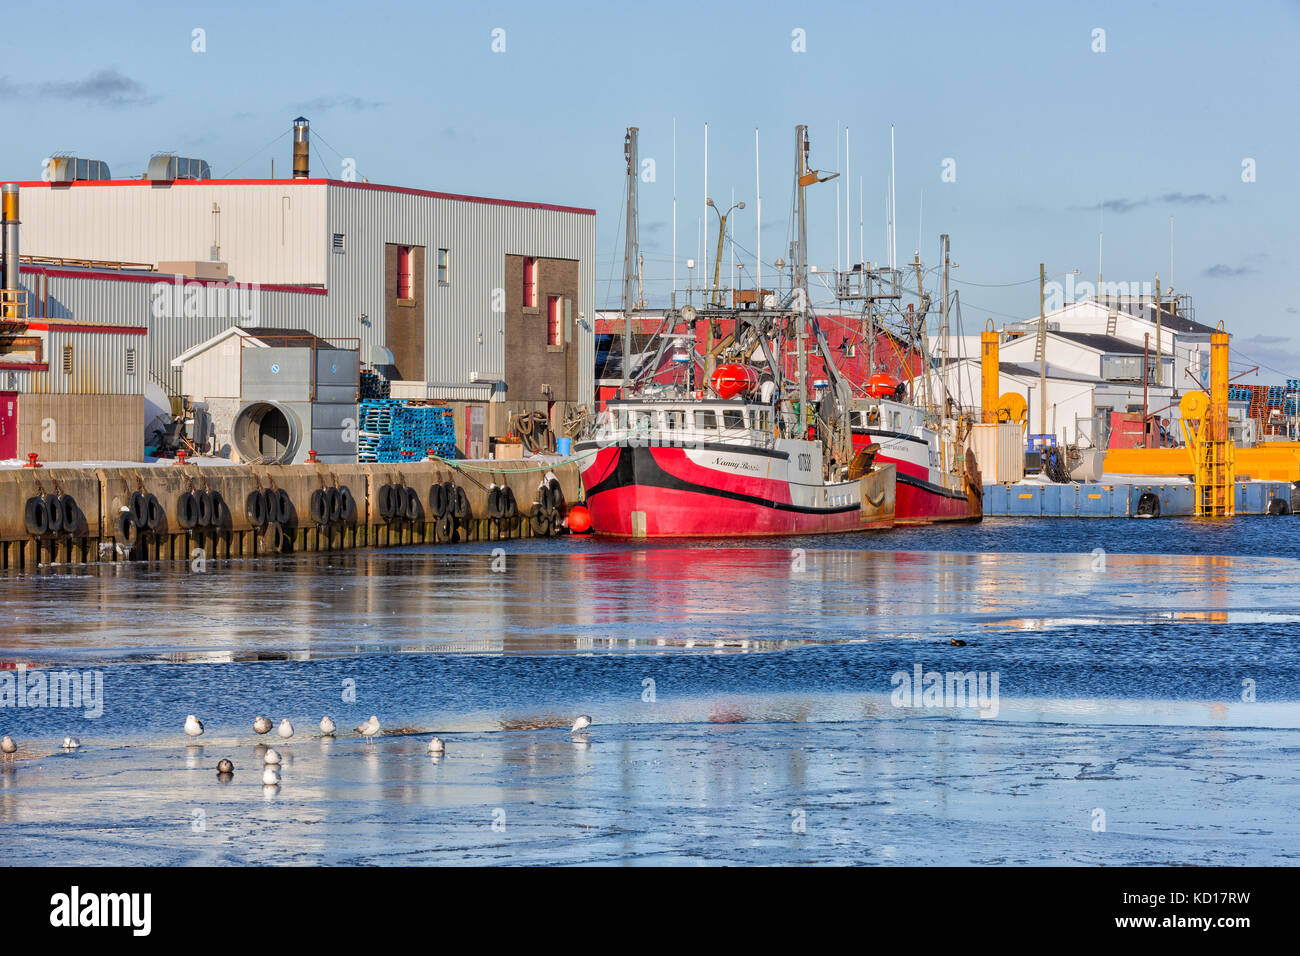 Barche da pesca legato fino al pontile in inverno, glace bay, Nova Scotia, Canada Foto Stock